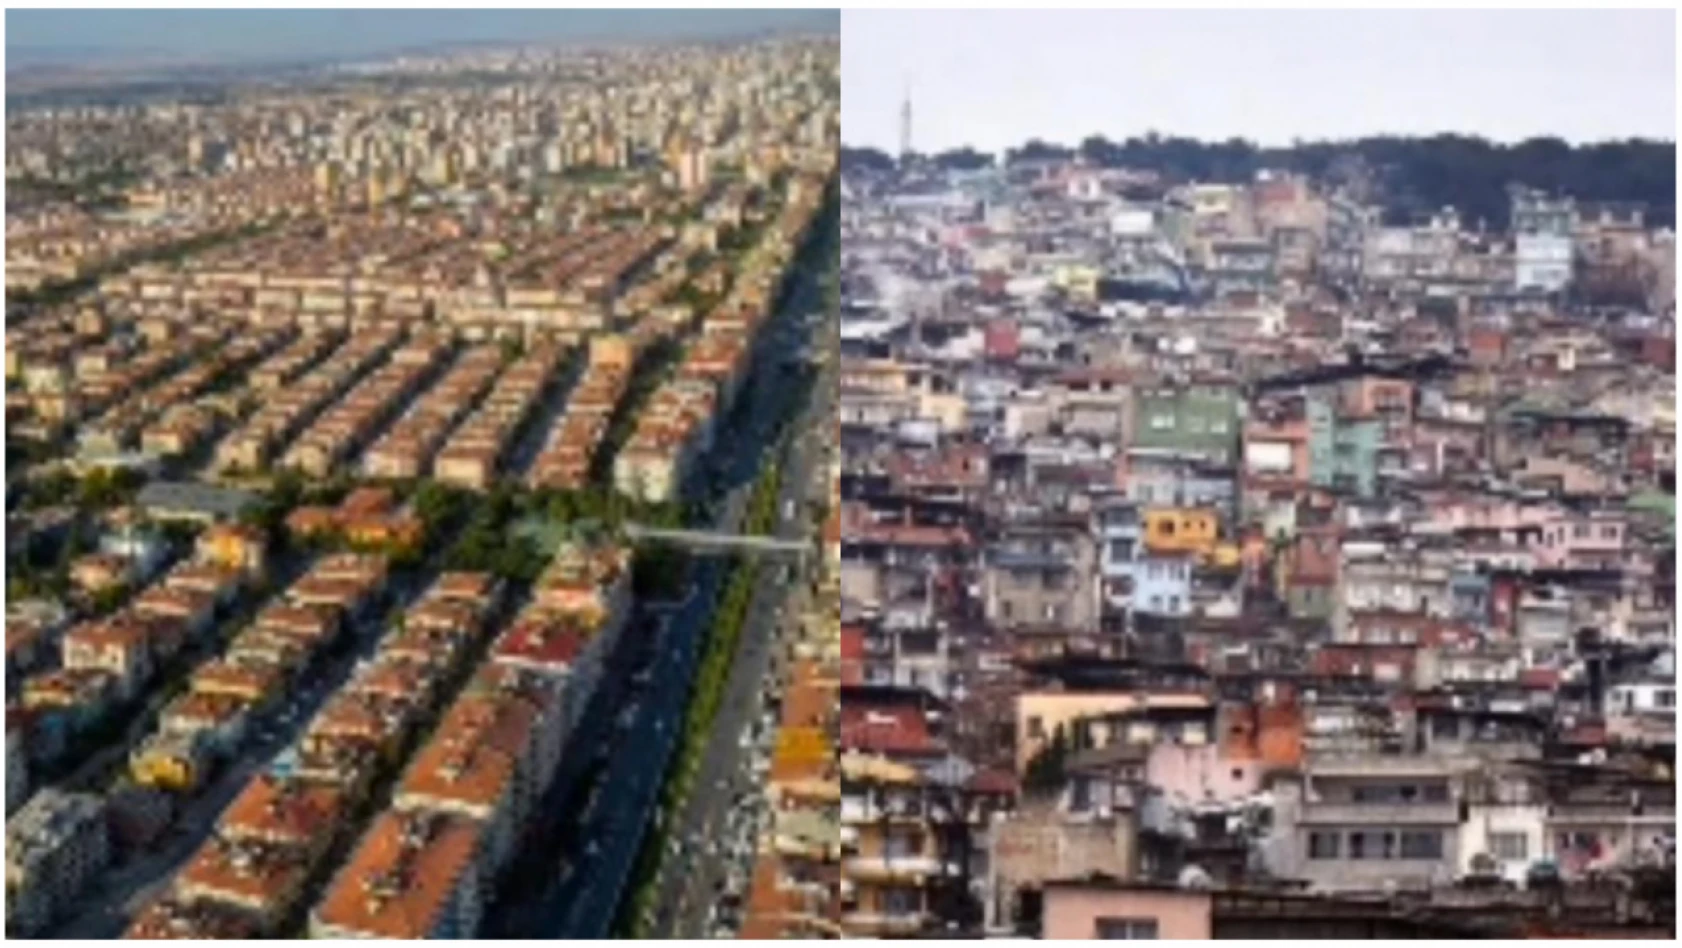 İzmirliler, şehir düzeninde Kayseri'yi örnek gösterdi! İşte o görüntüler…